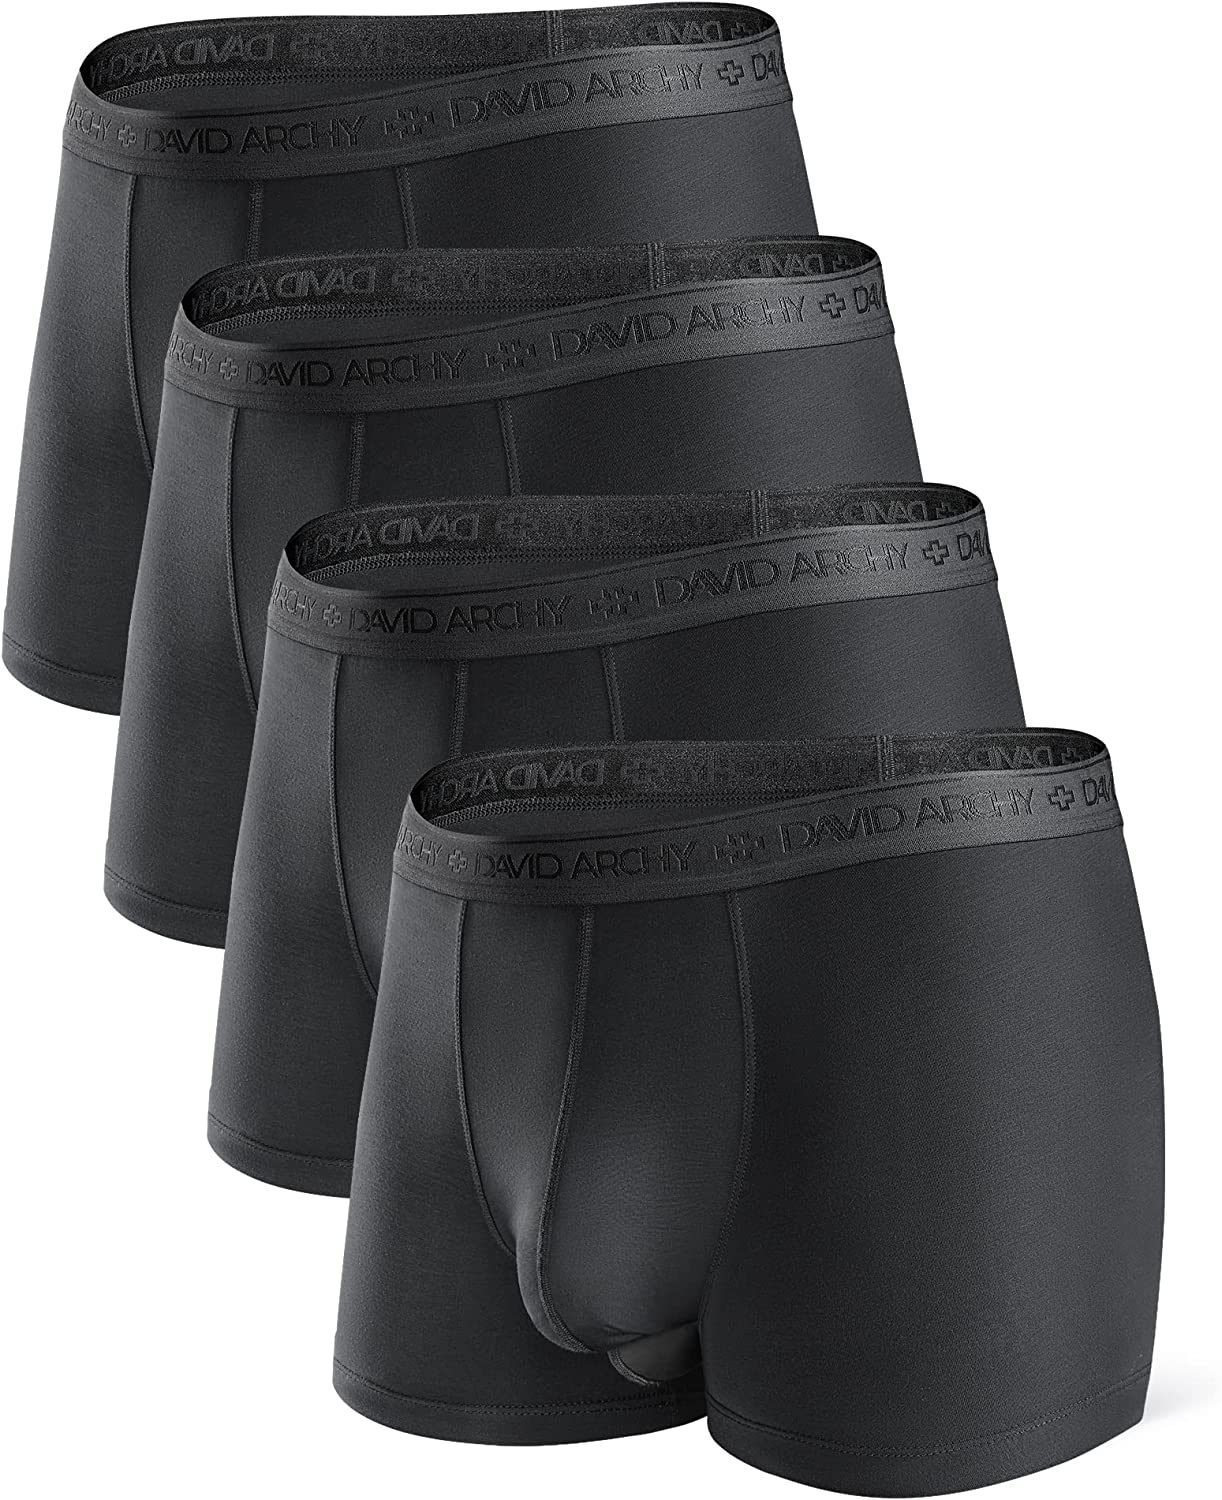 ZONBAILON Men's Briefs Underwear, 2 Pack: Black+white, XX-Large :  : Clothing, Shoes & Accessories